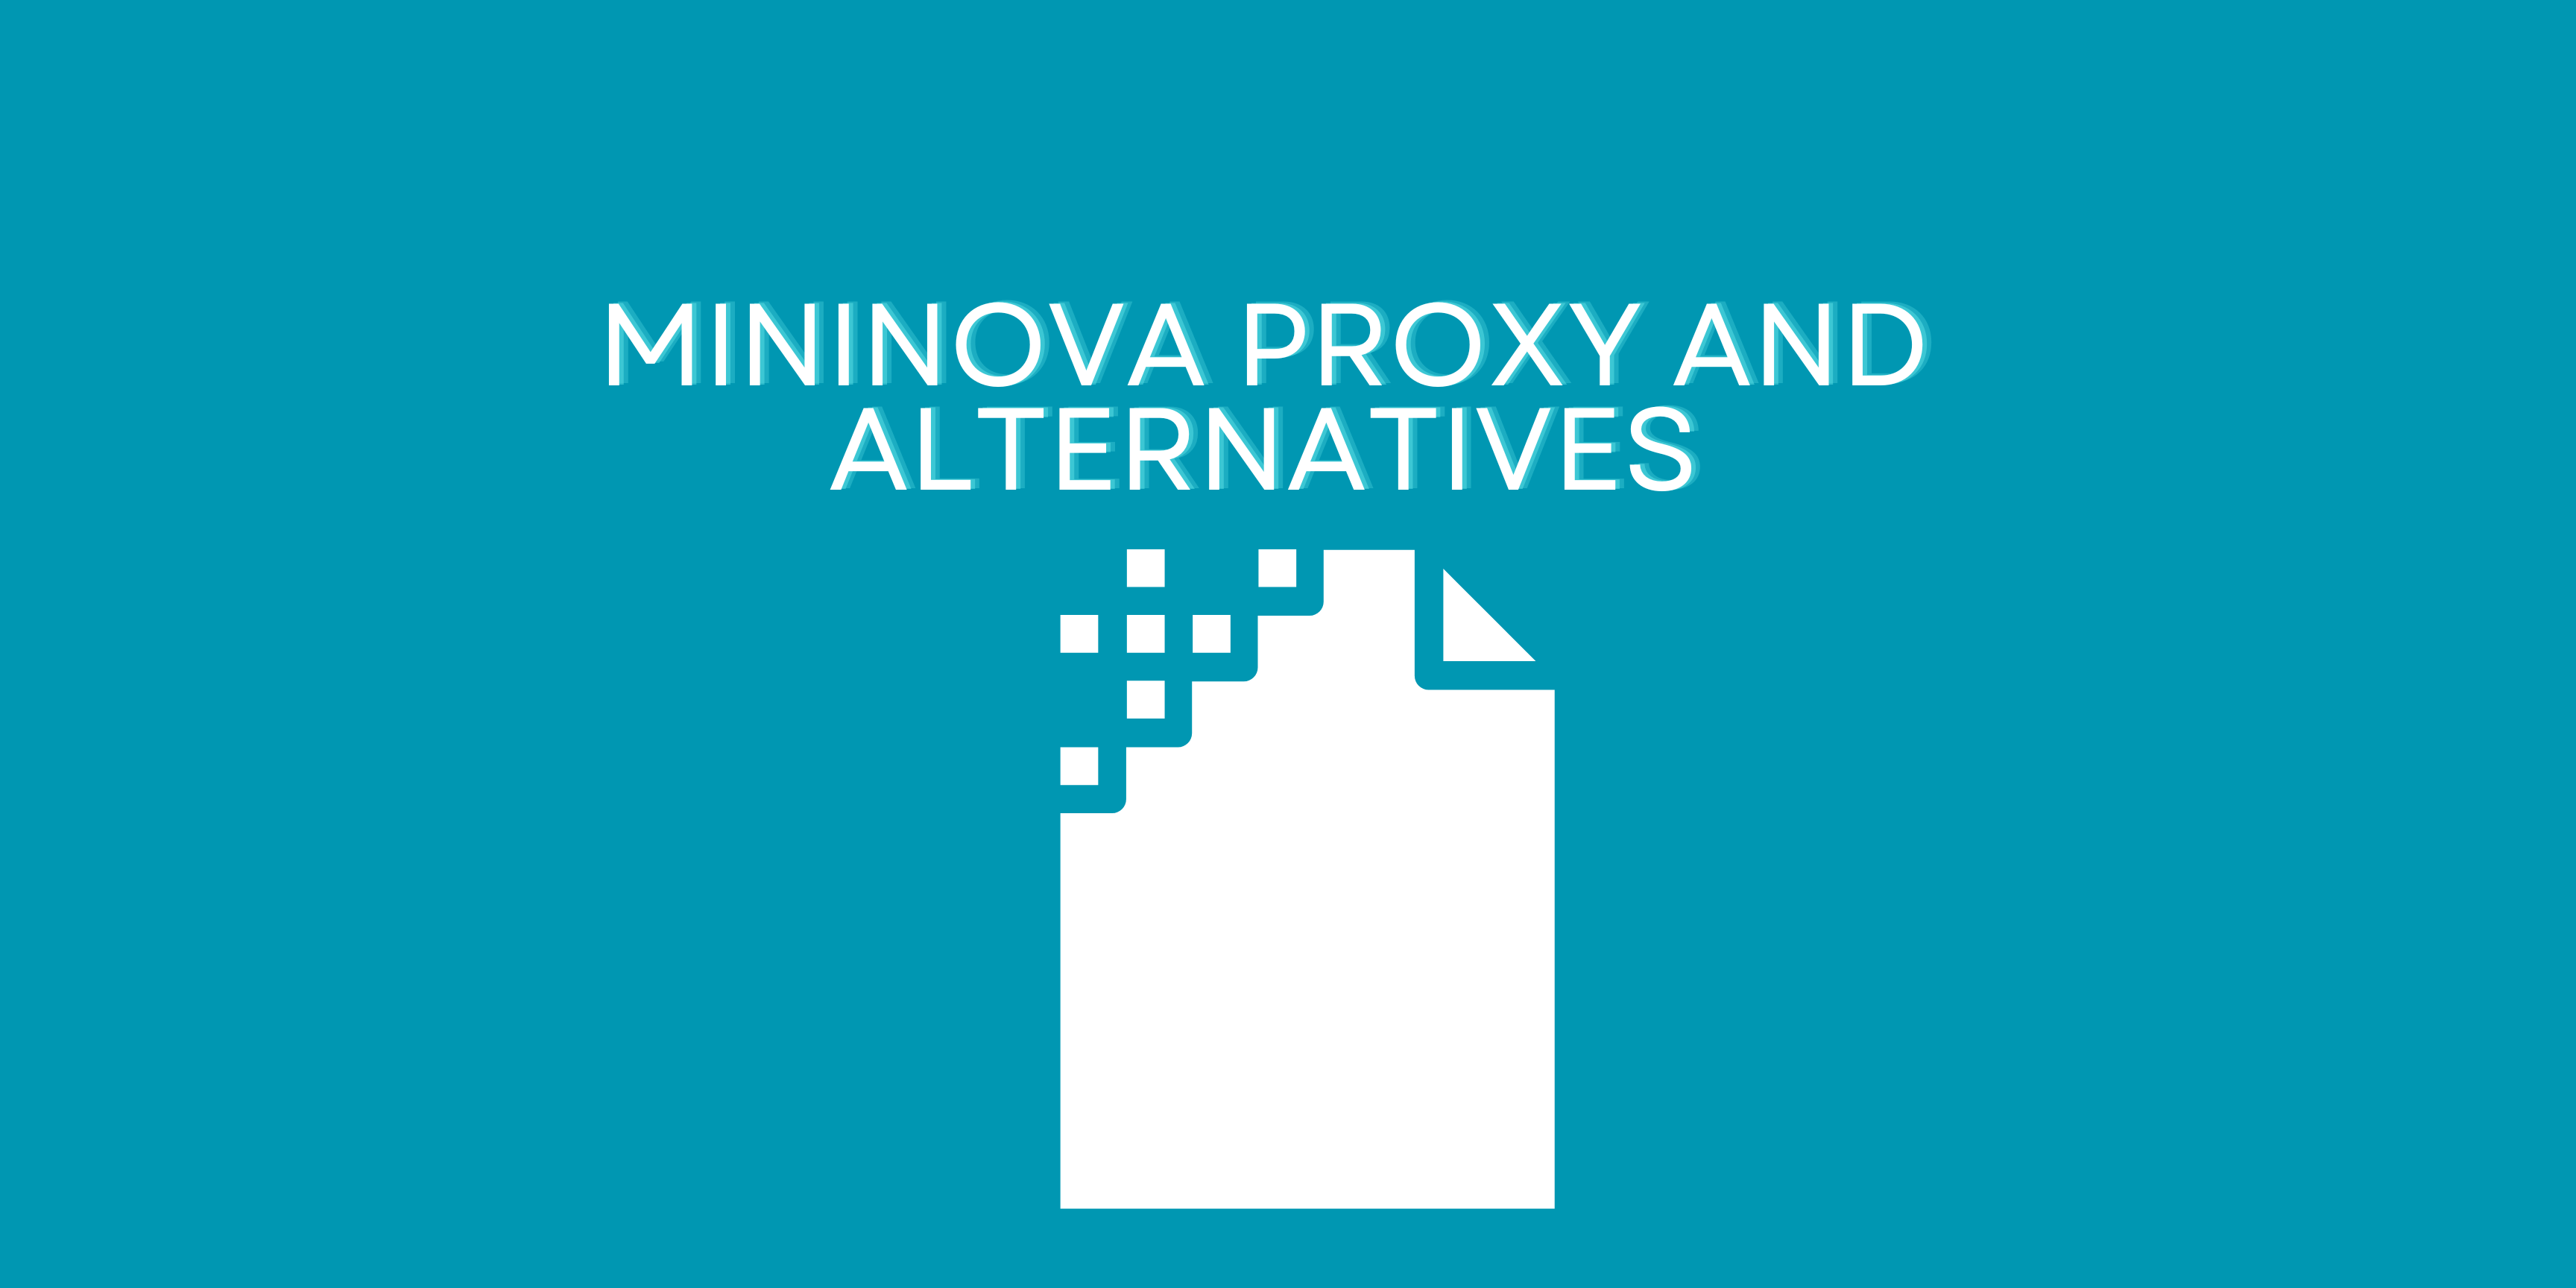 Mininova Proxy and Alternatives